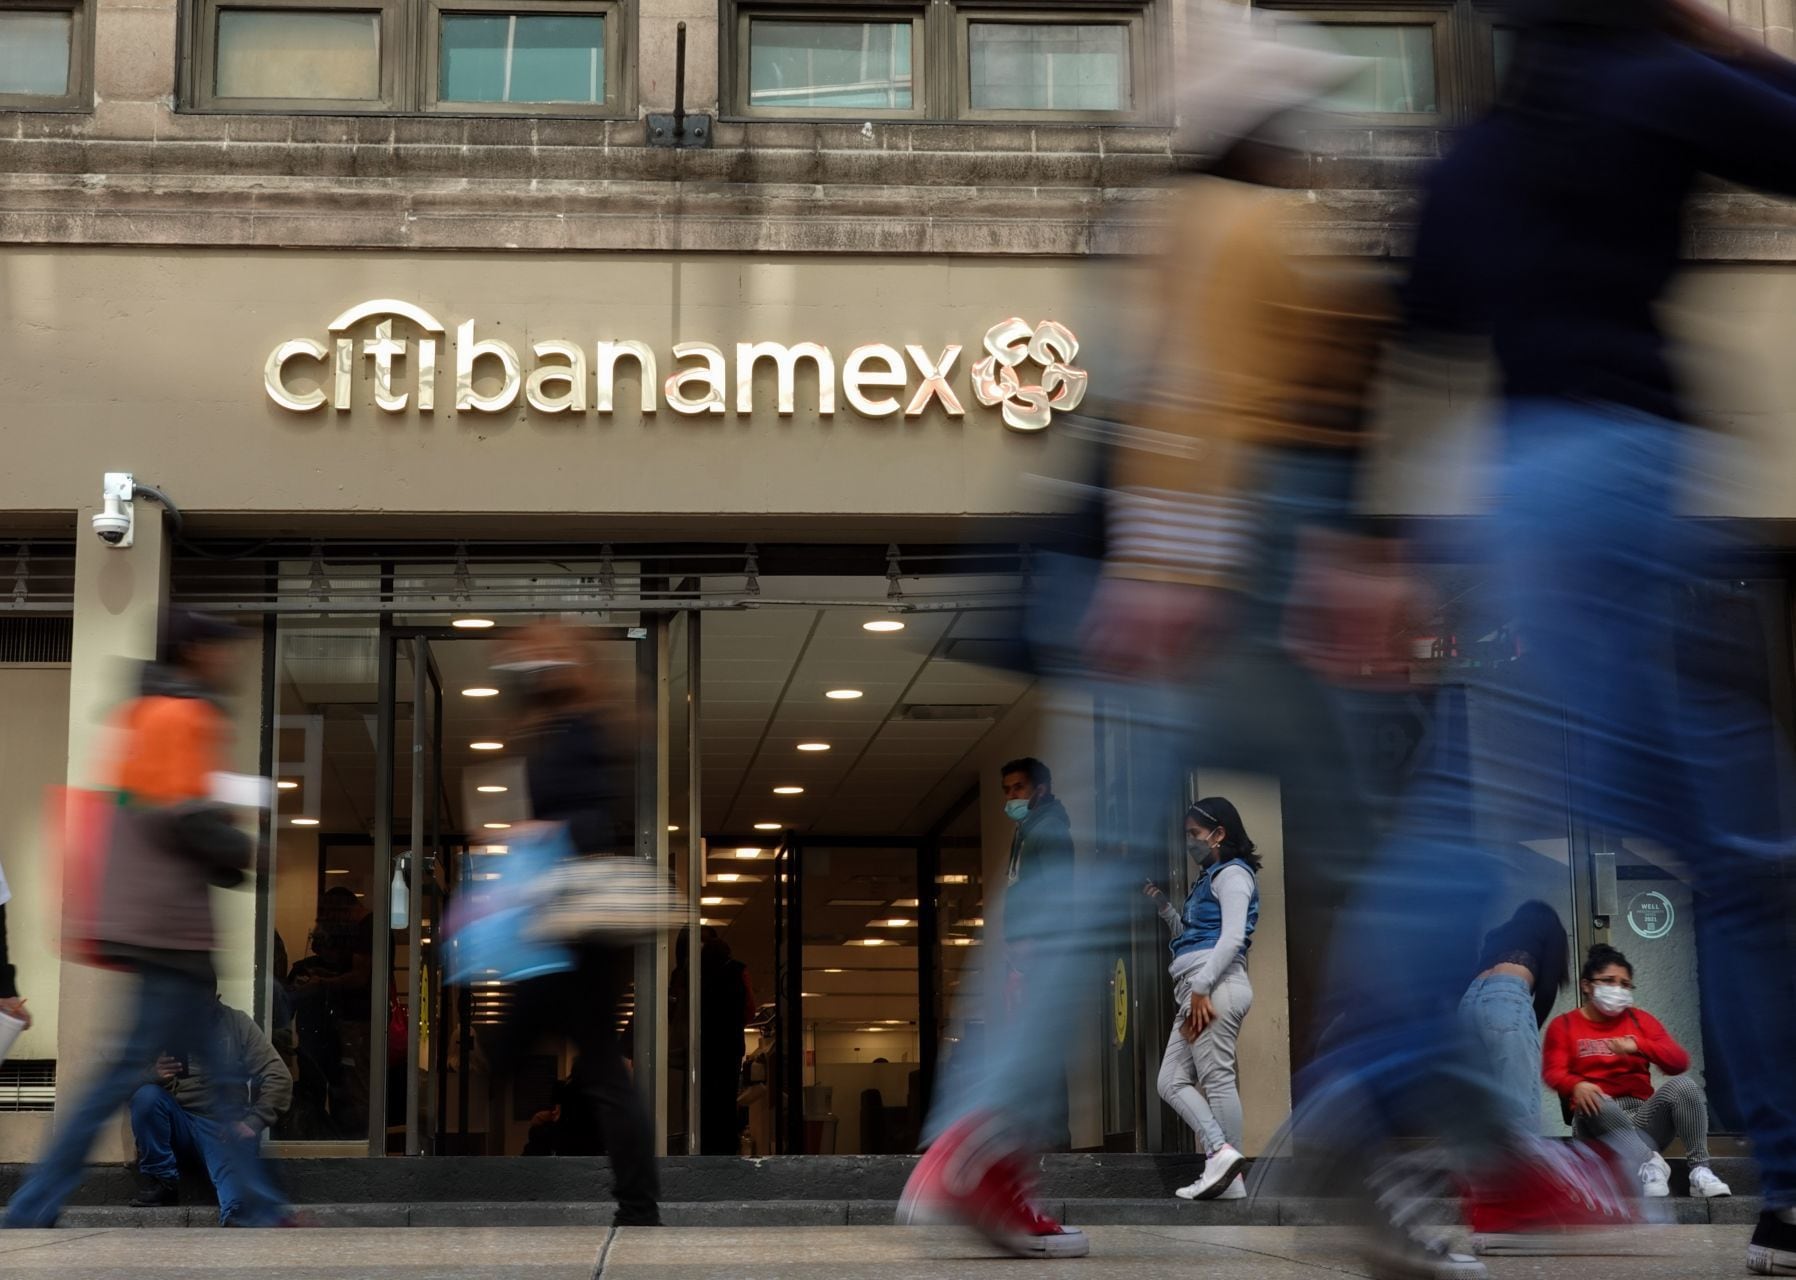 Venta de Banamex: AMLO ‘palomea’ a Grupo México para hacer la compra